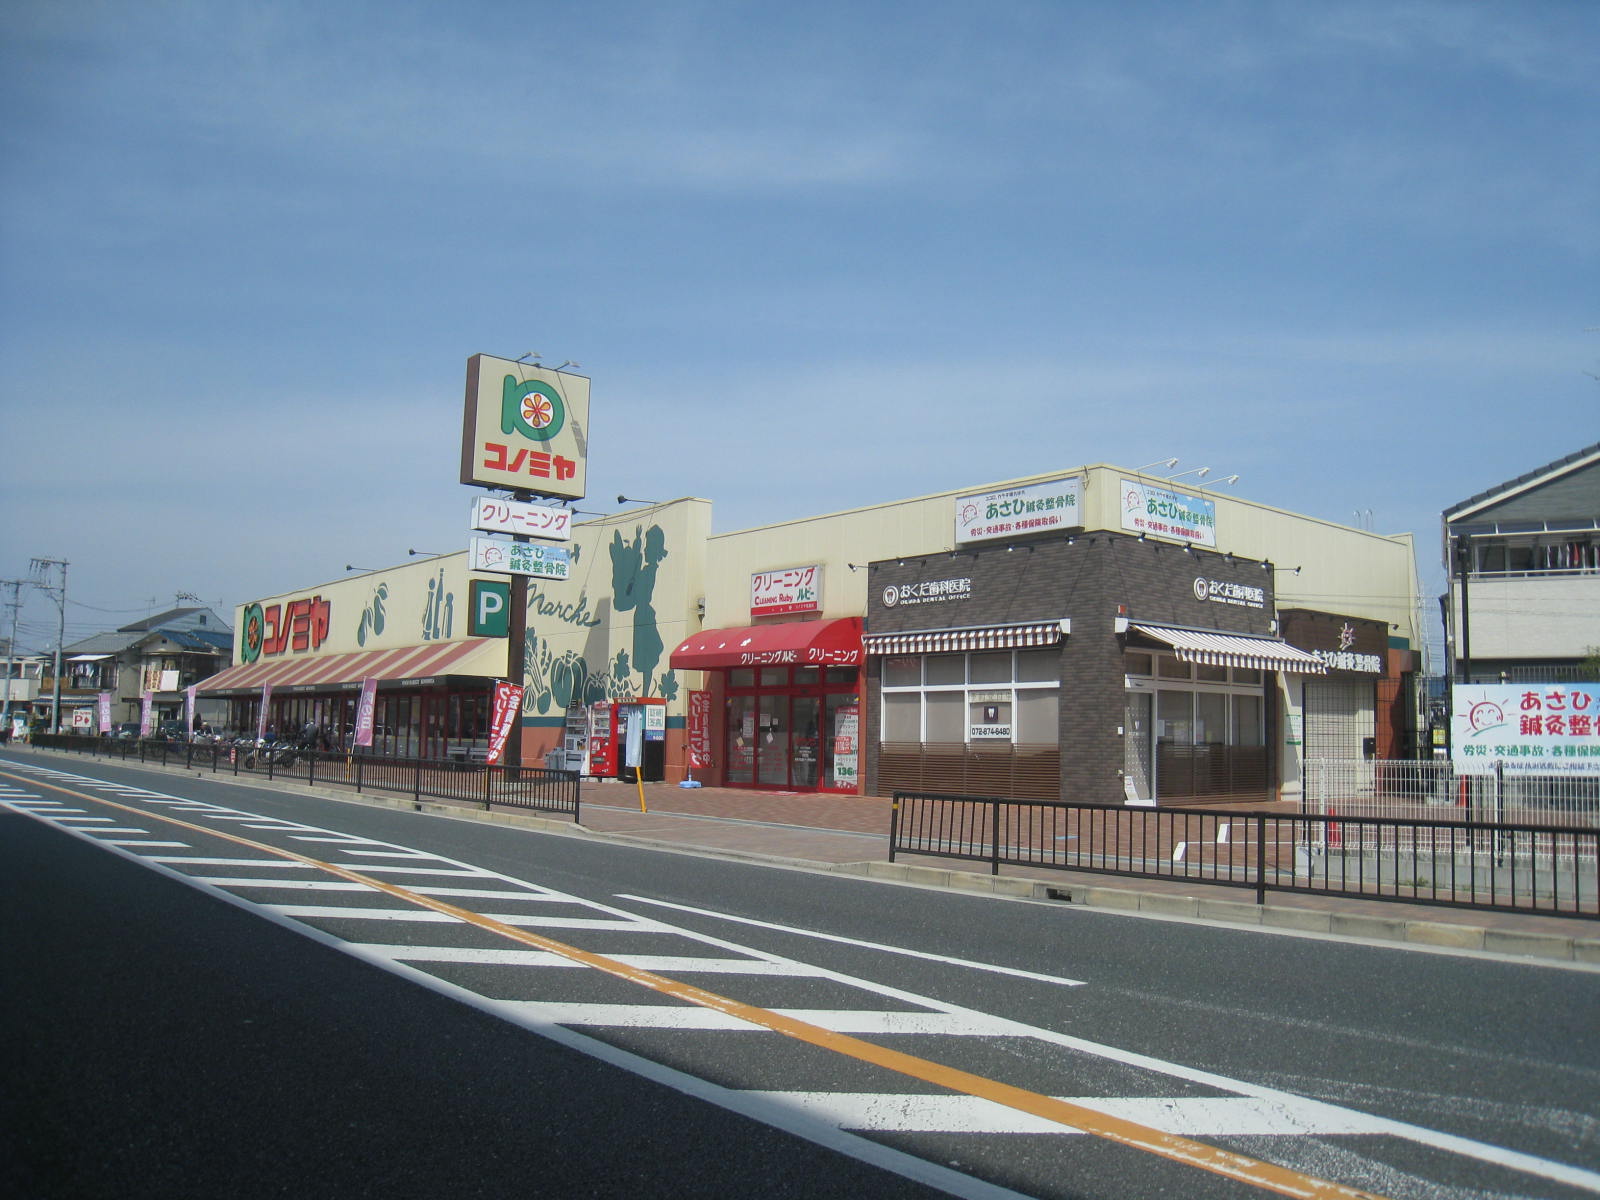 Supermarket. Konomiya Suminodo store up to (super) 1196m